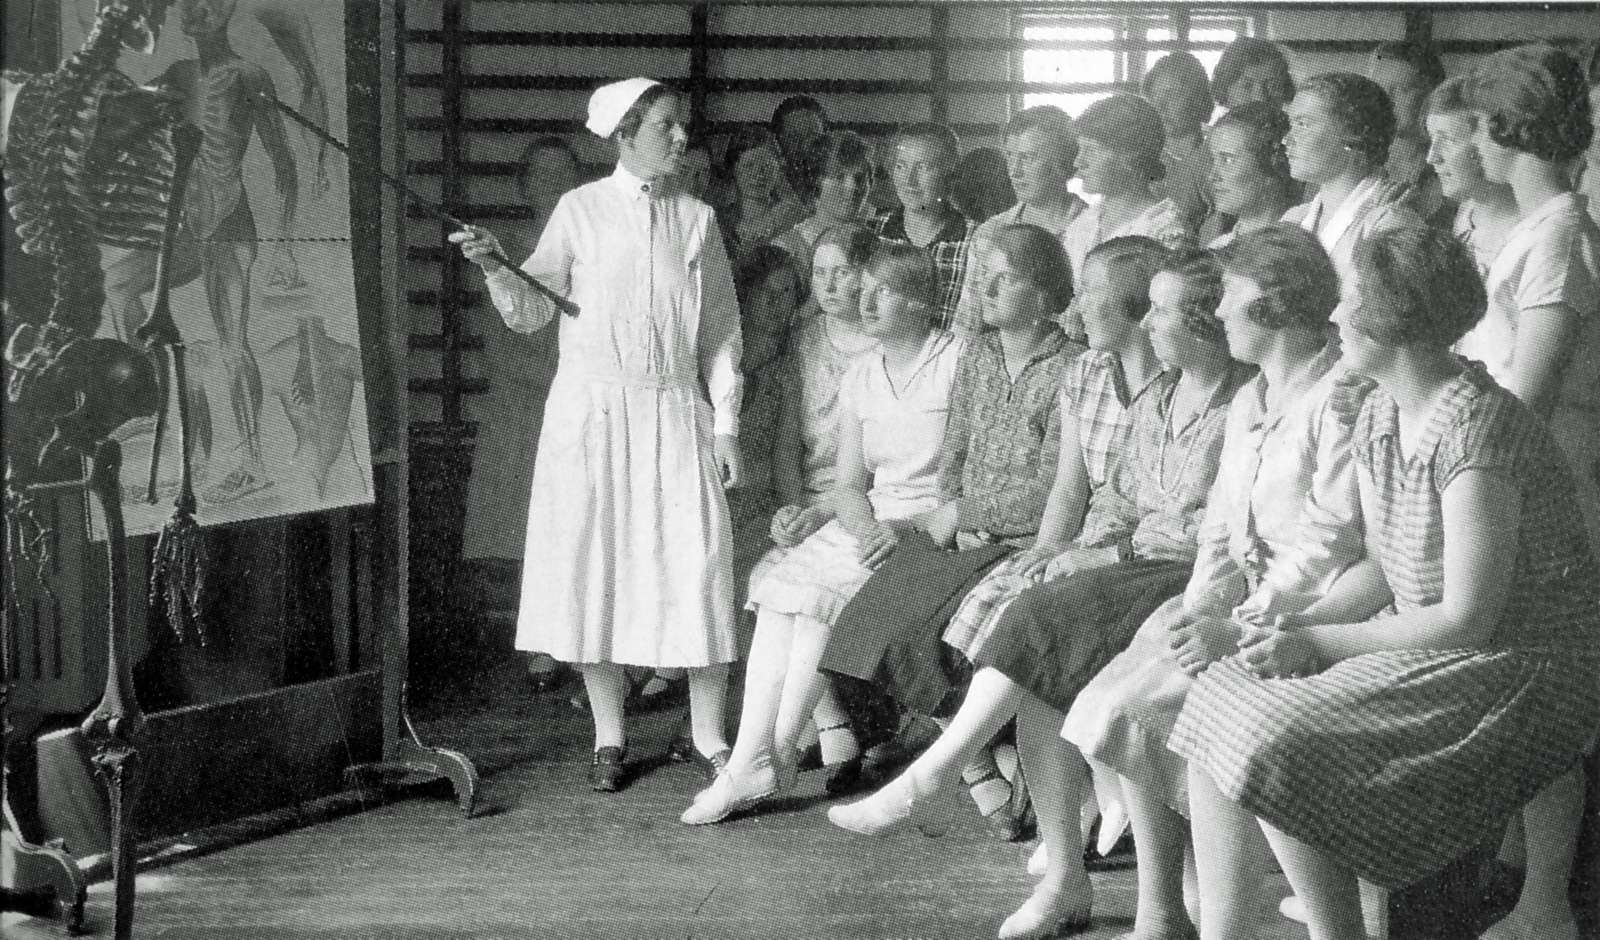 Instruktionssygeplejerske Ingrid Kaae underviser i anatomi på Testrup Højskole ca. 1930